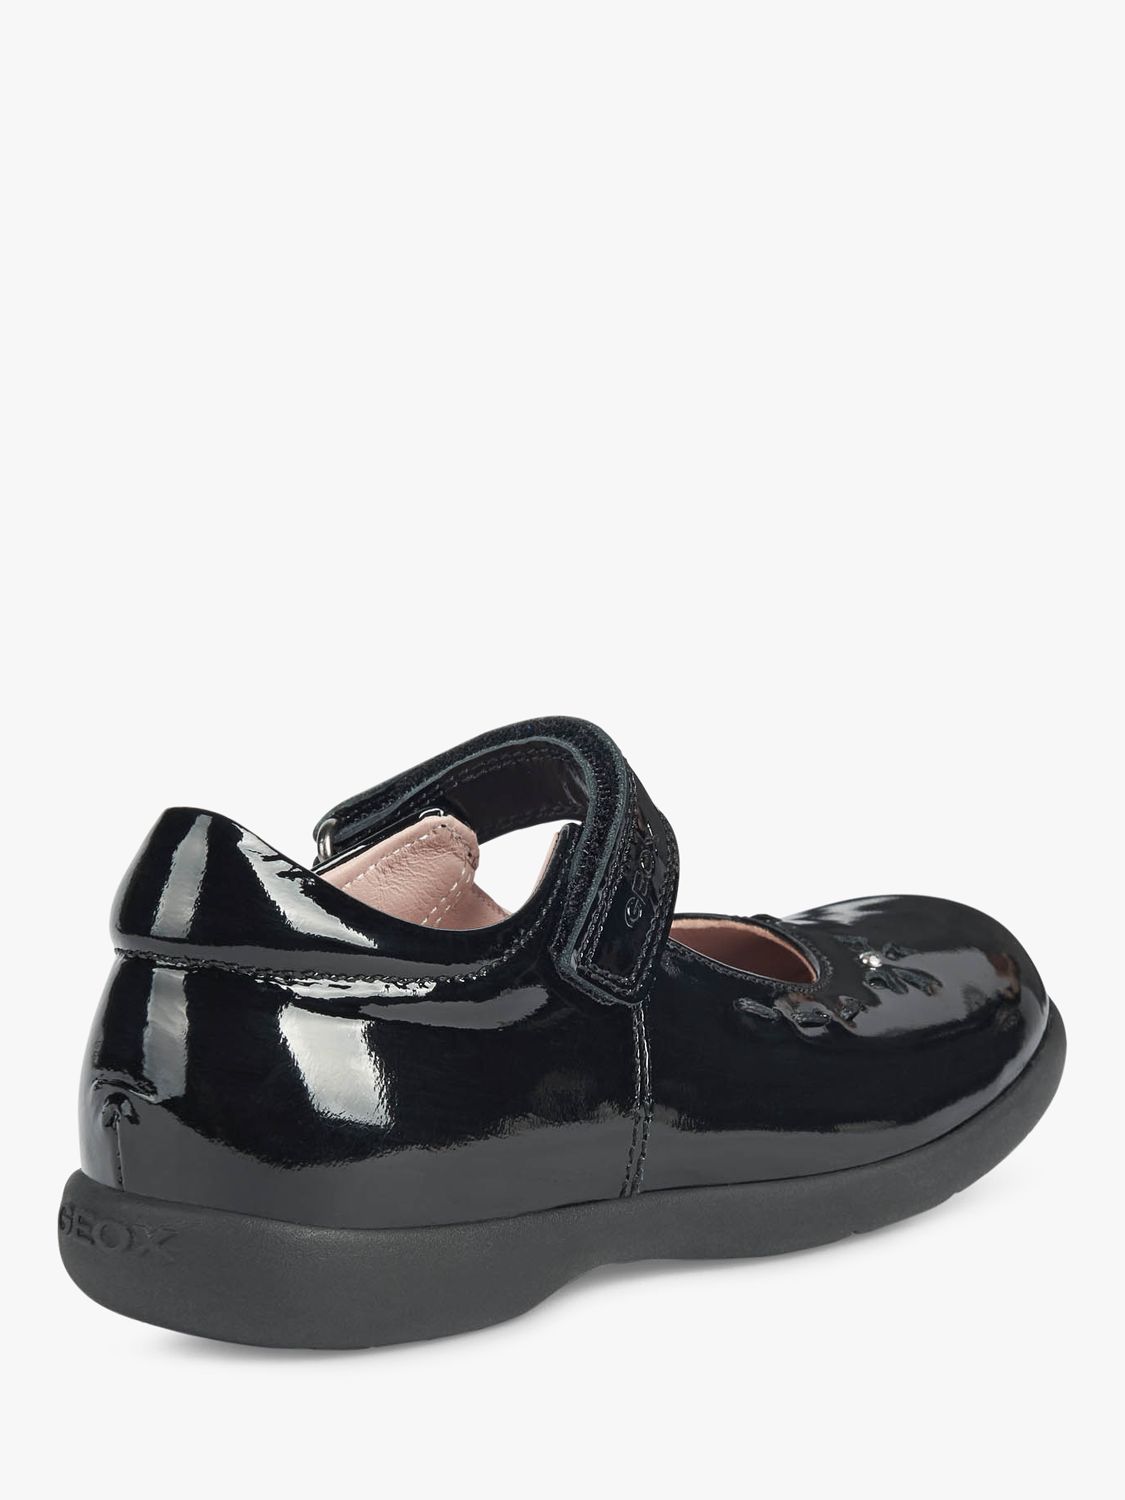 Buy Geox Kids' Naimara Mary Jane School Shoes, Black Online at johnlewis.com